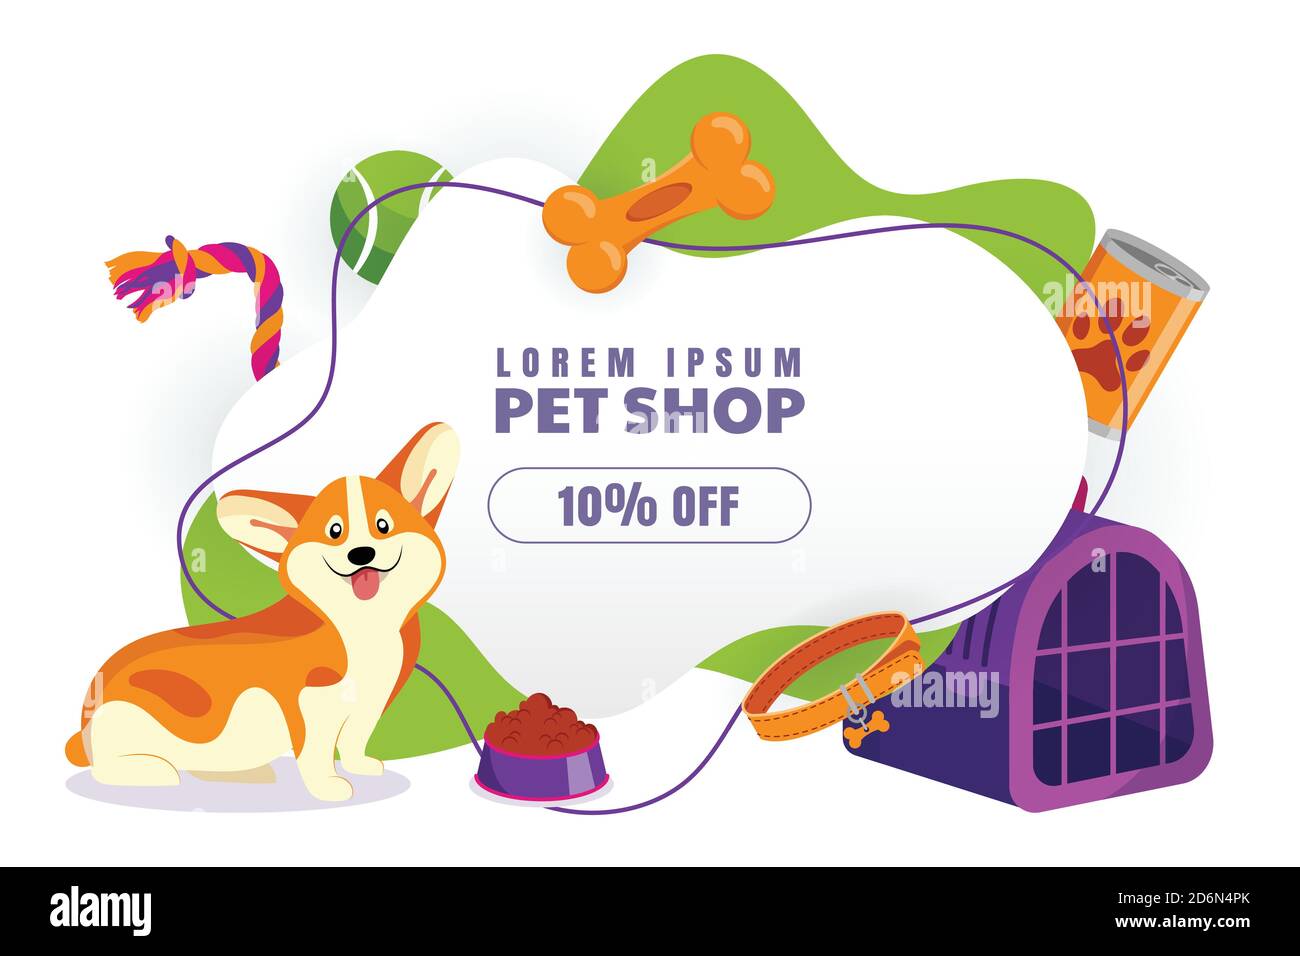 PET Shop Rabatt Verkauf Poster, Banner Design Vorlage.  Vektor-Cartoon-Illustration von welsh Corgi pembroke Hund mit Spielzeug.  Tierfutter, Zubehör und Stock-Vektorgrafik - Alamy